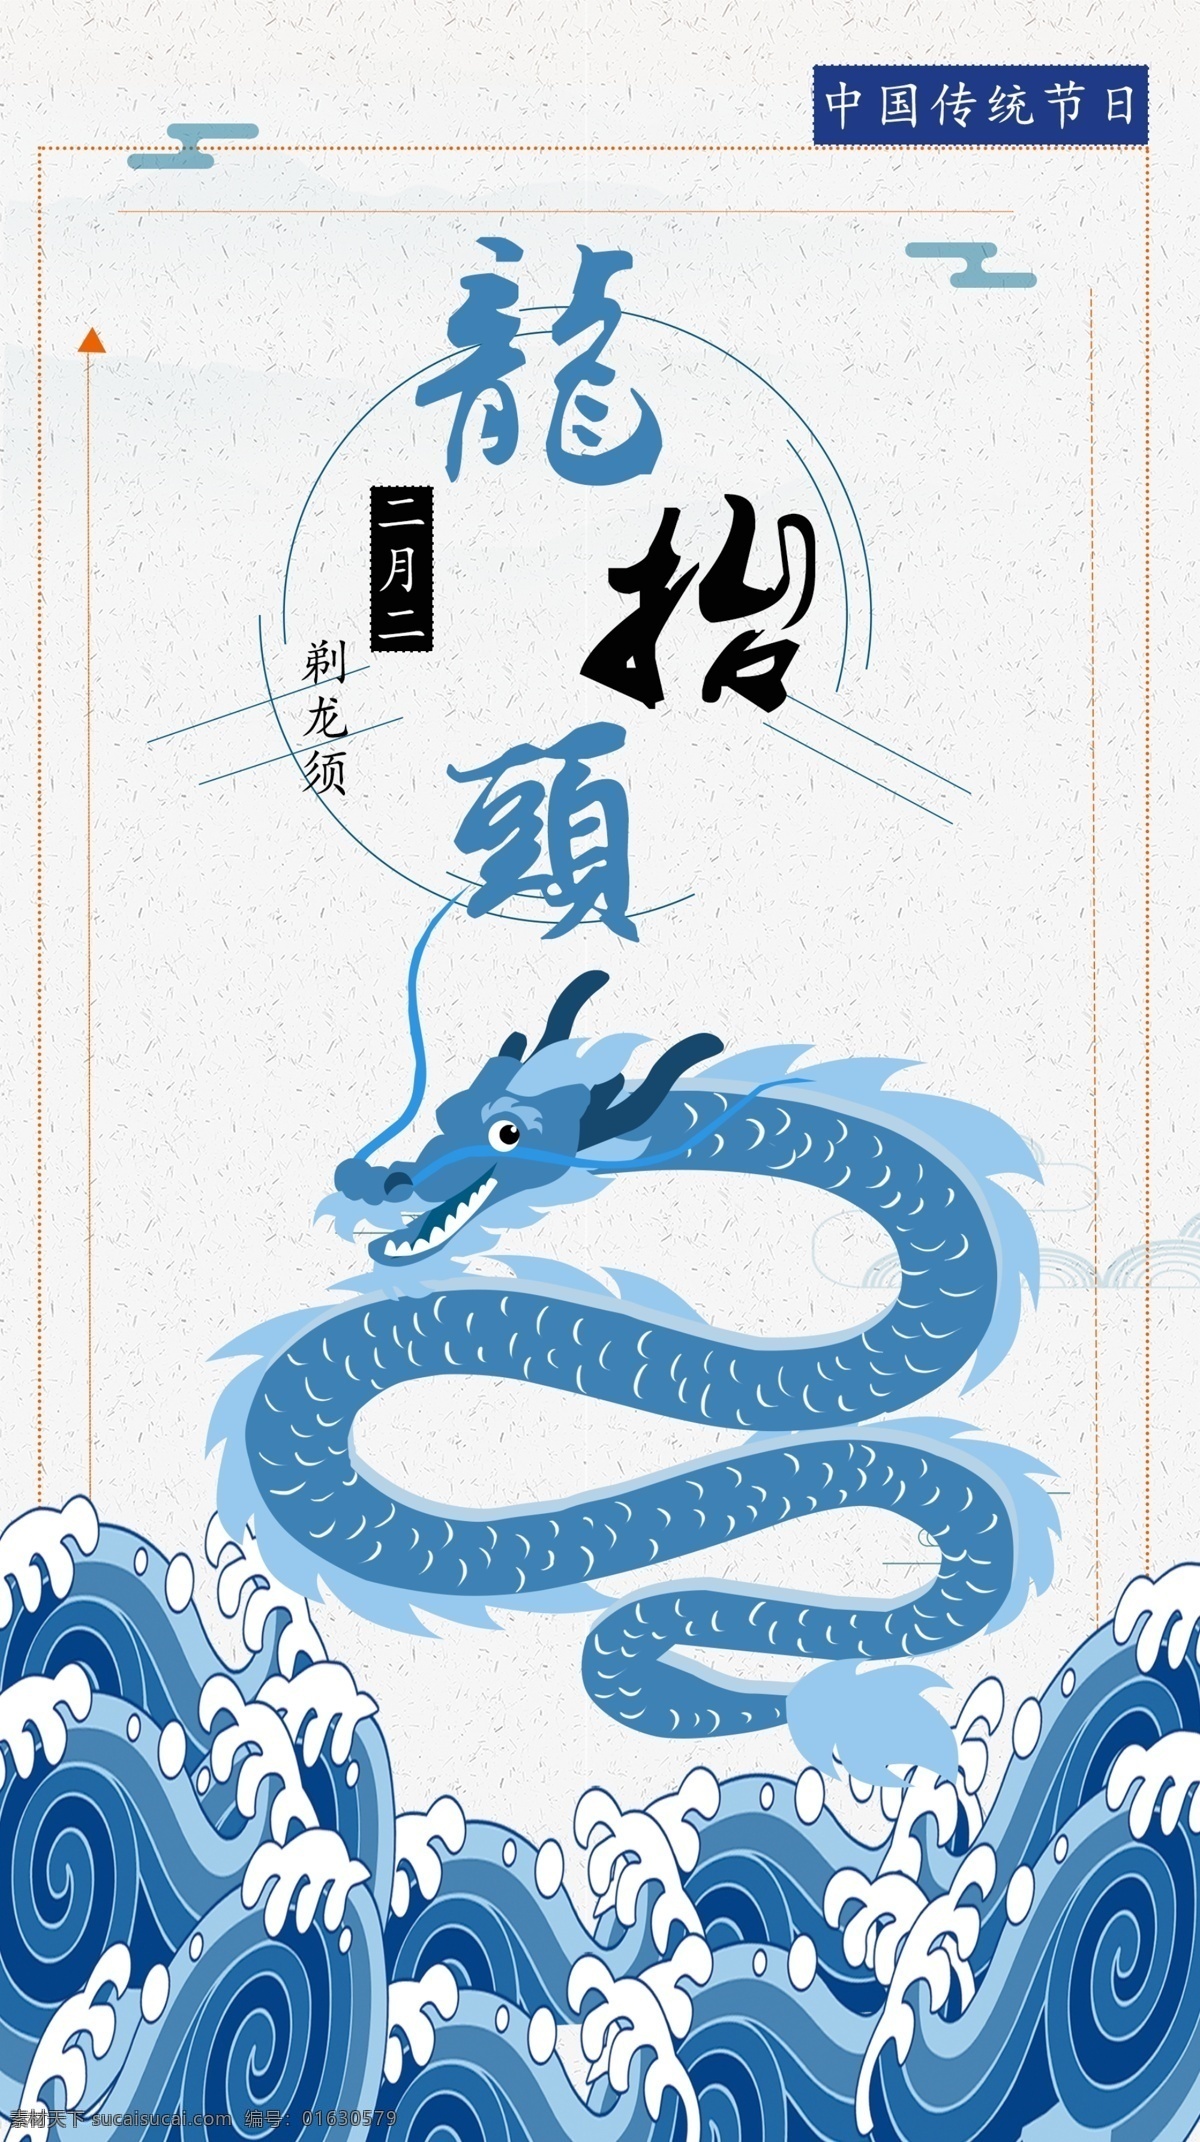 二月 二龙 抬头 海报 中国龙 蓝色 龙抬头 中国风